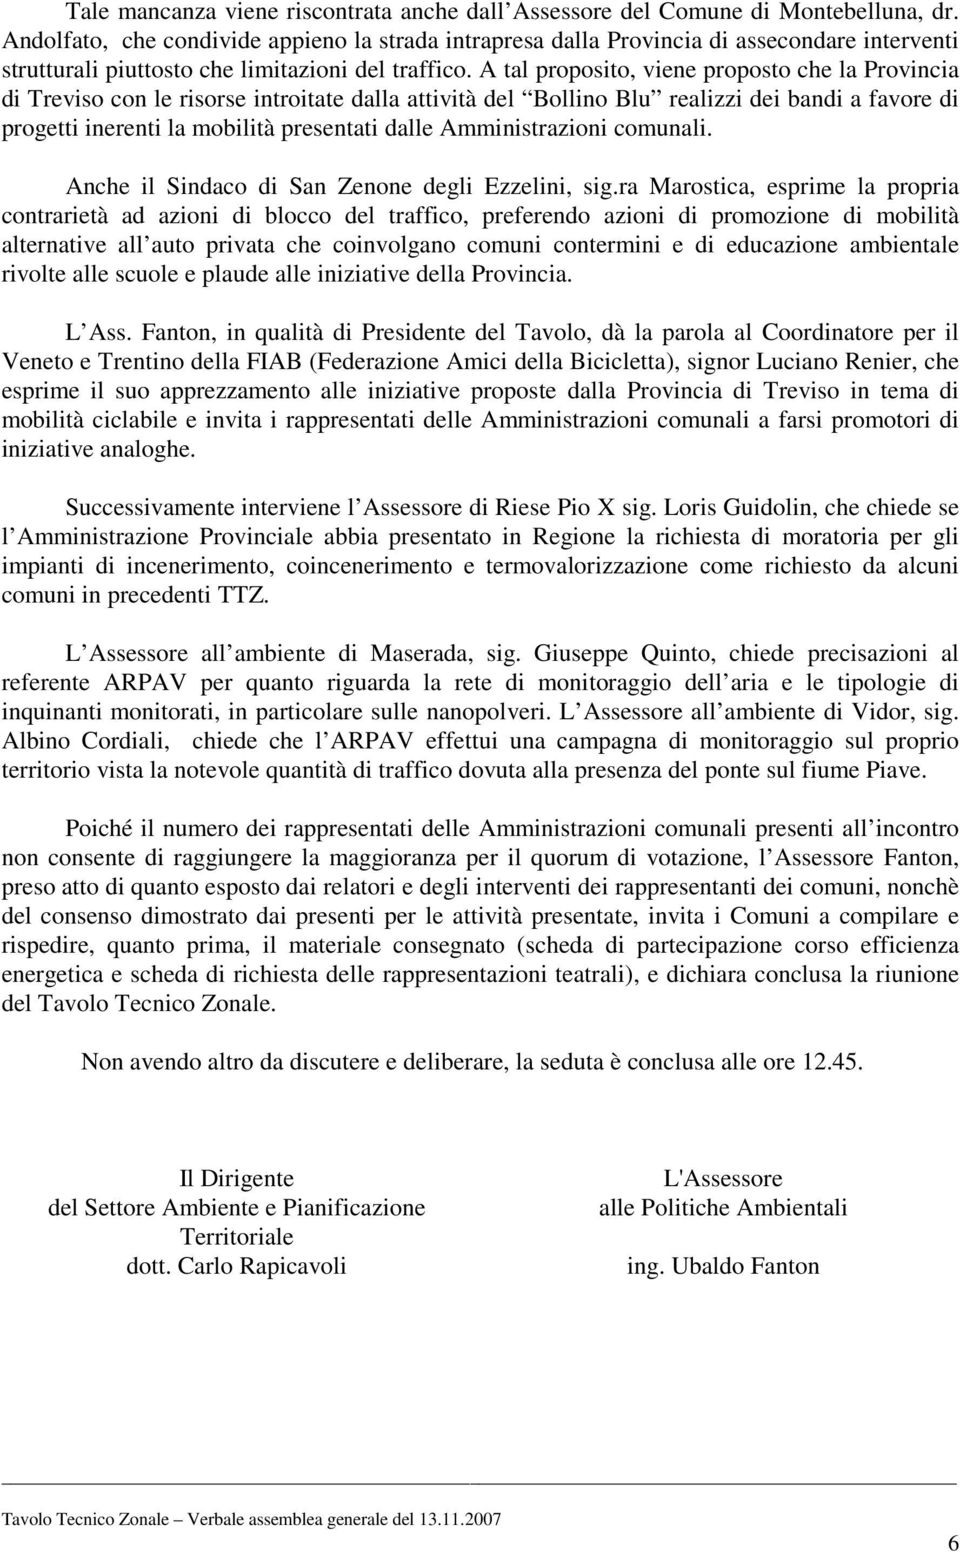 A tal proposito, viene proposto che la Provincia di Treviso con le risorse introitate dalla attività del Bollino Blu realizzi dei bandi a favore di progetti inerenti la mobilità presentati dalle